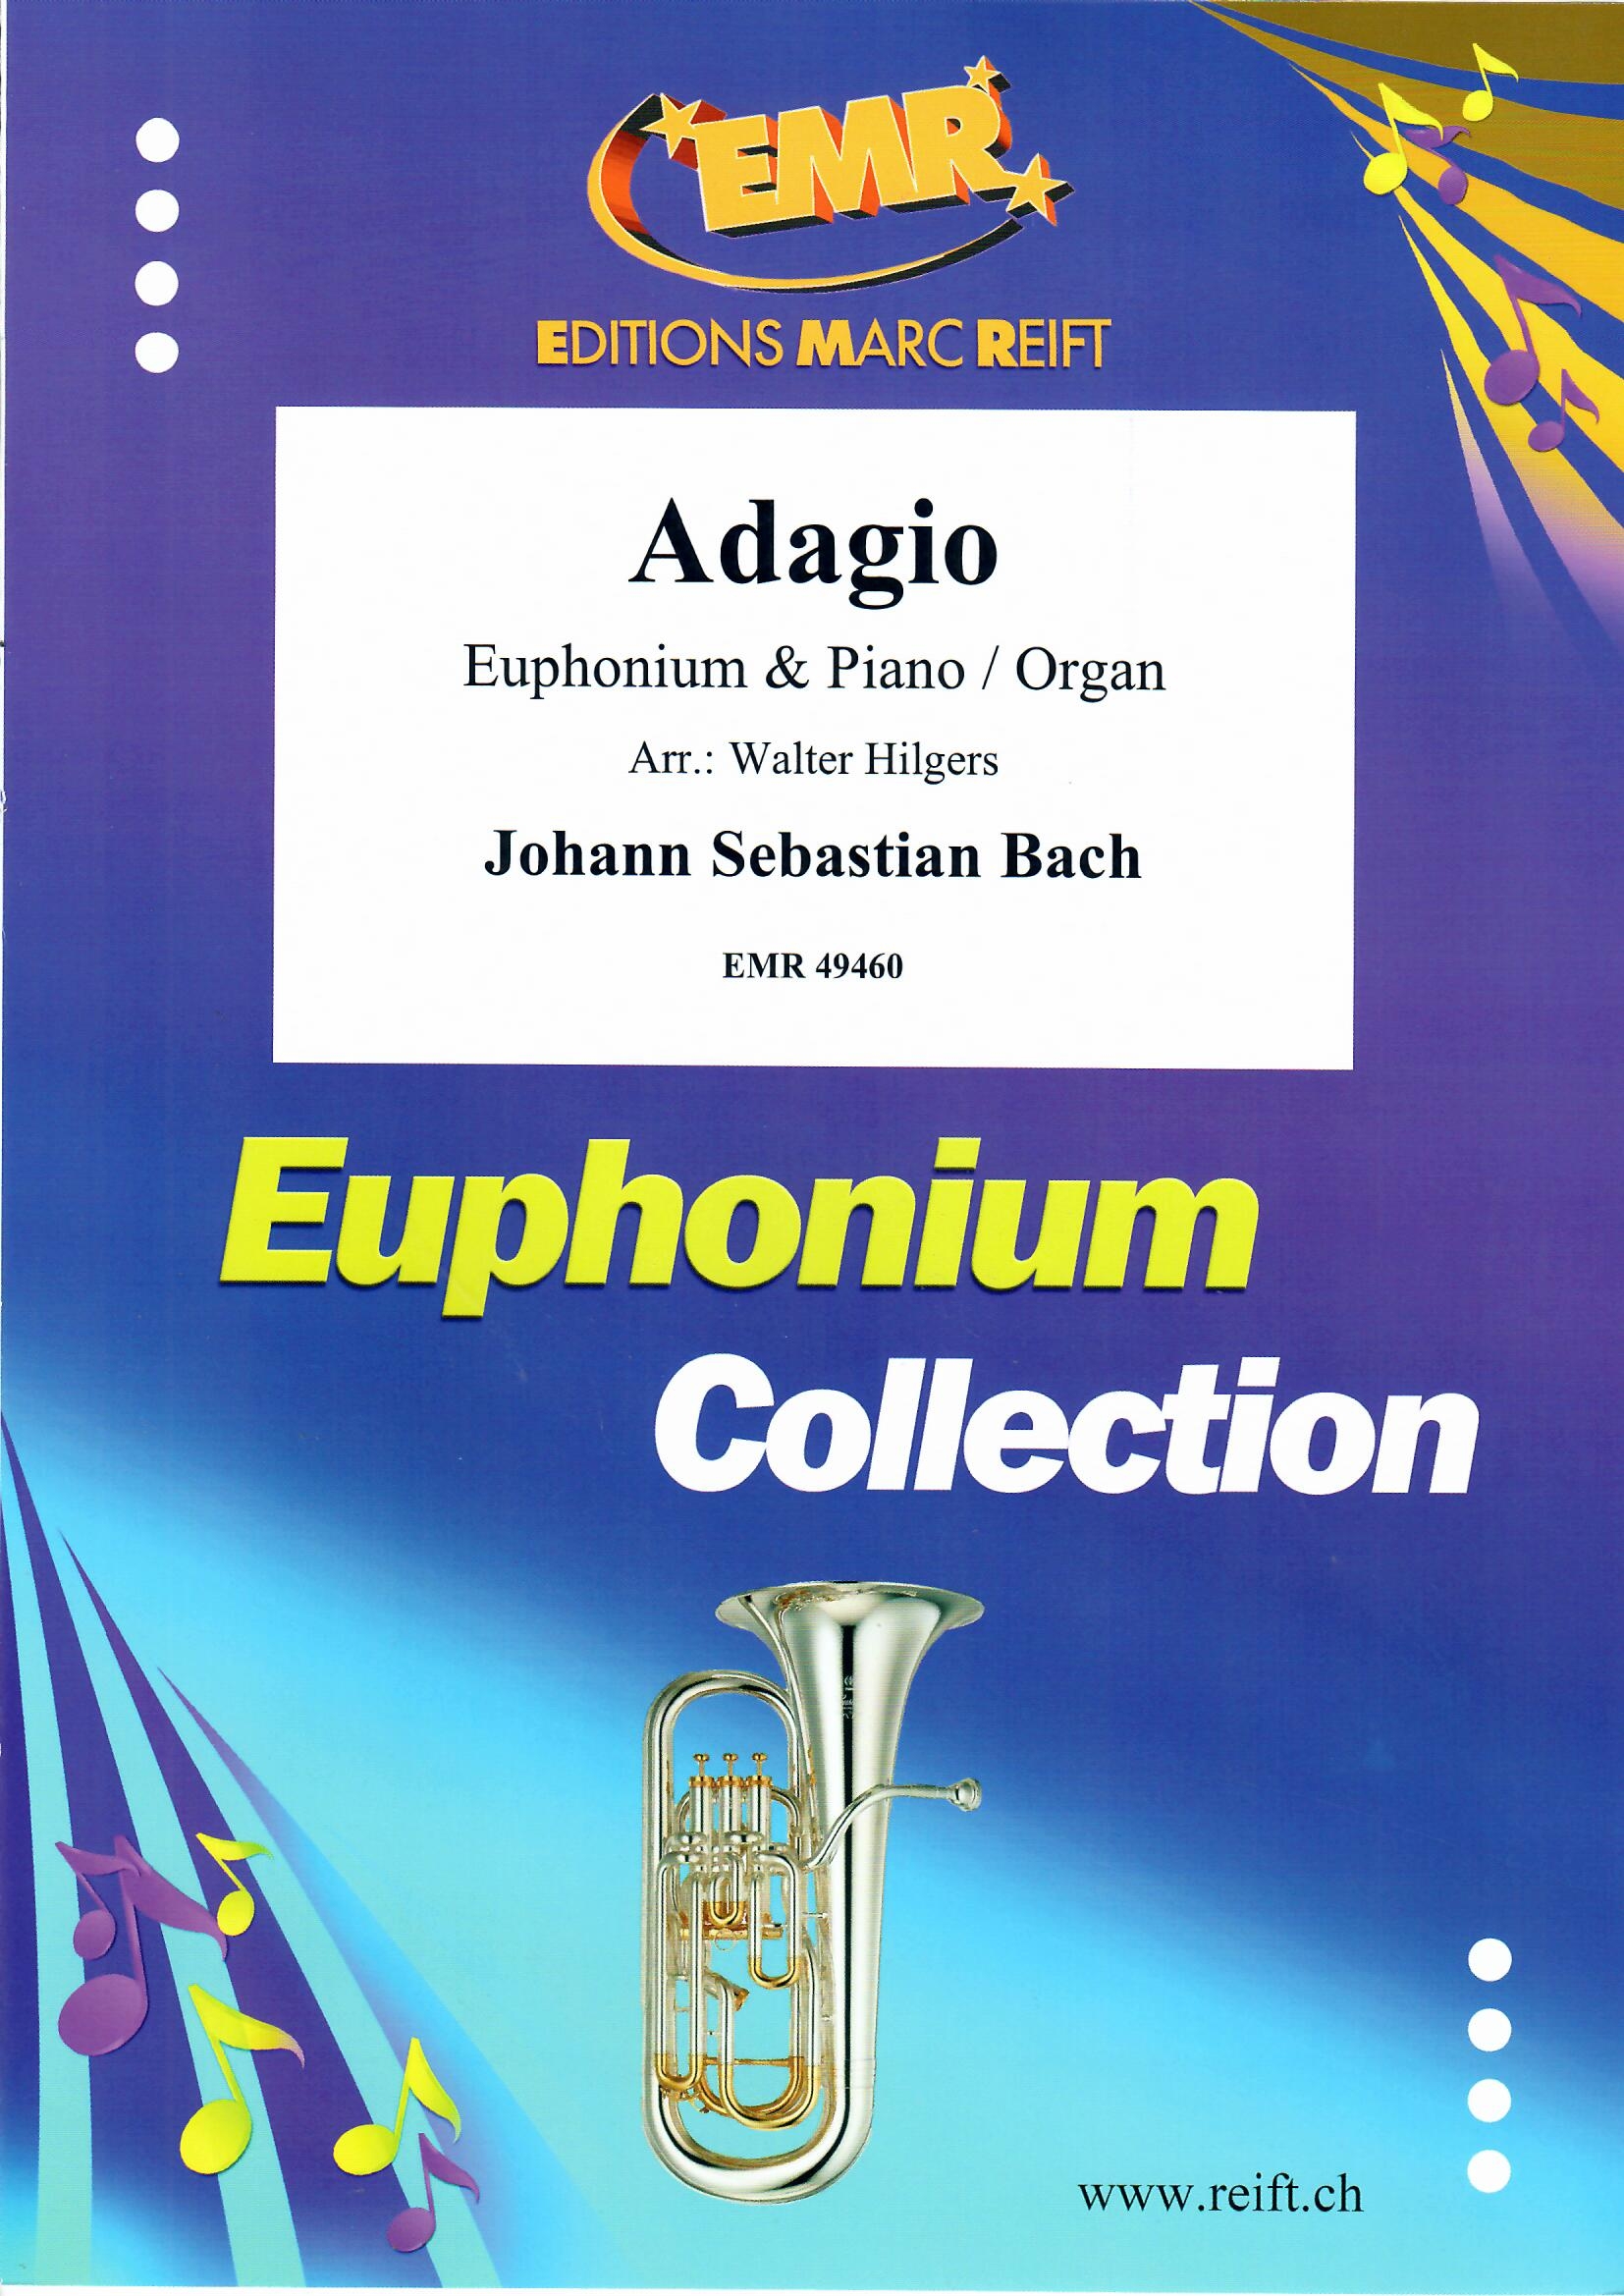 ADAGIO - Euphonium & Organ